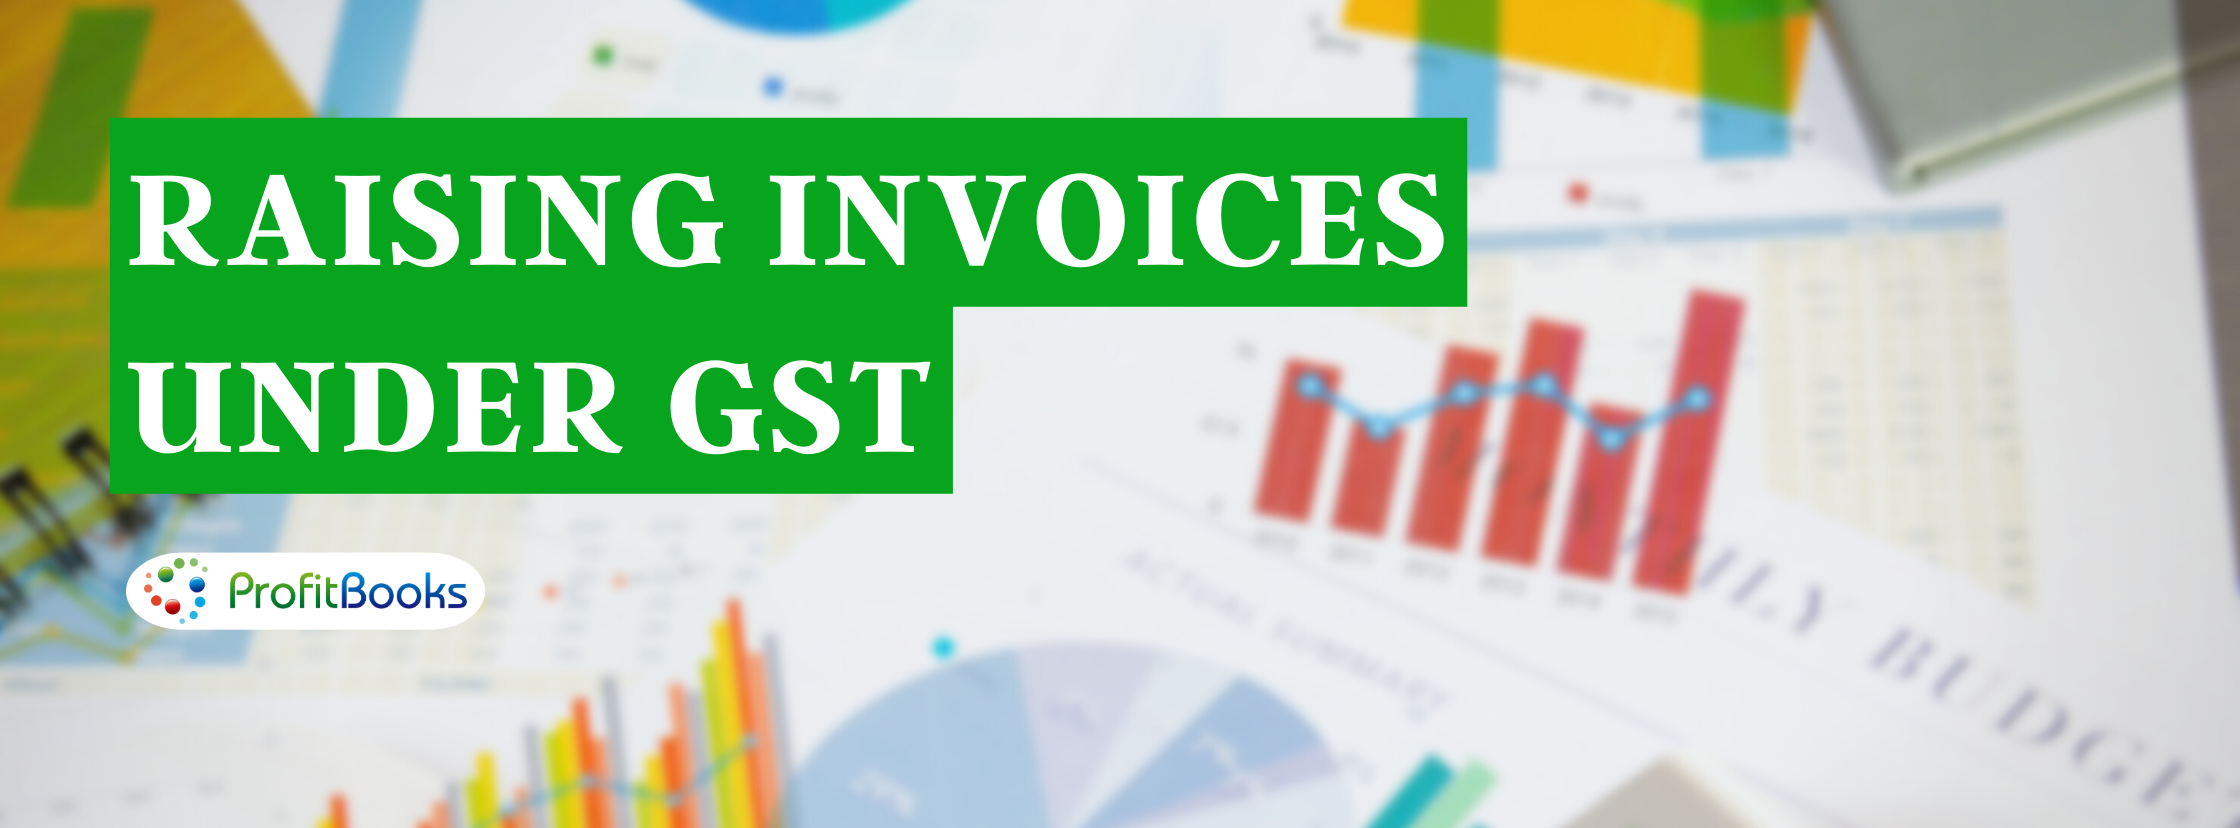 Raising invoices under GST